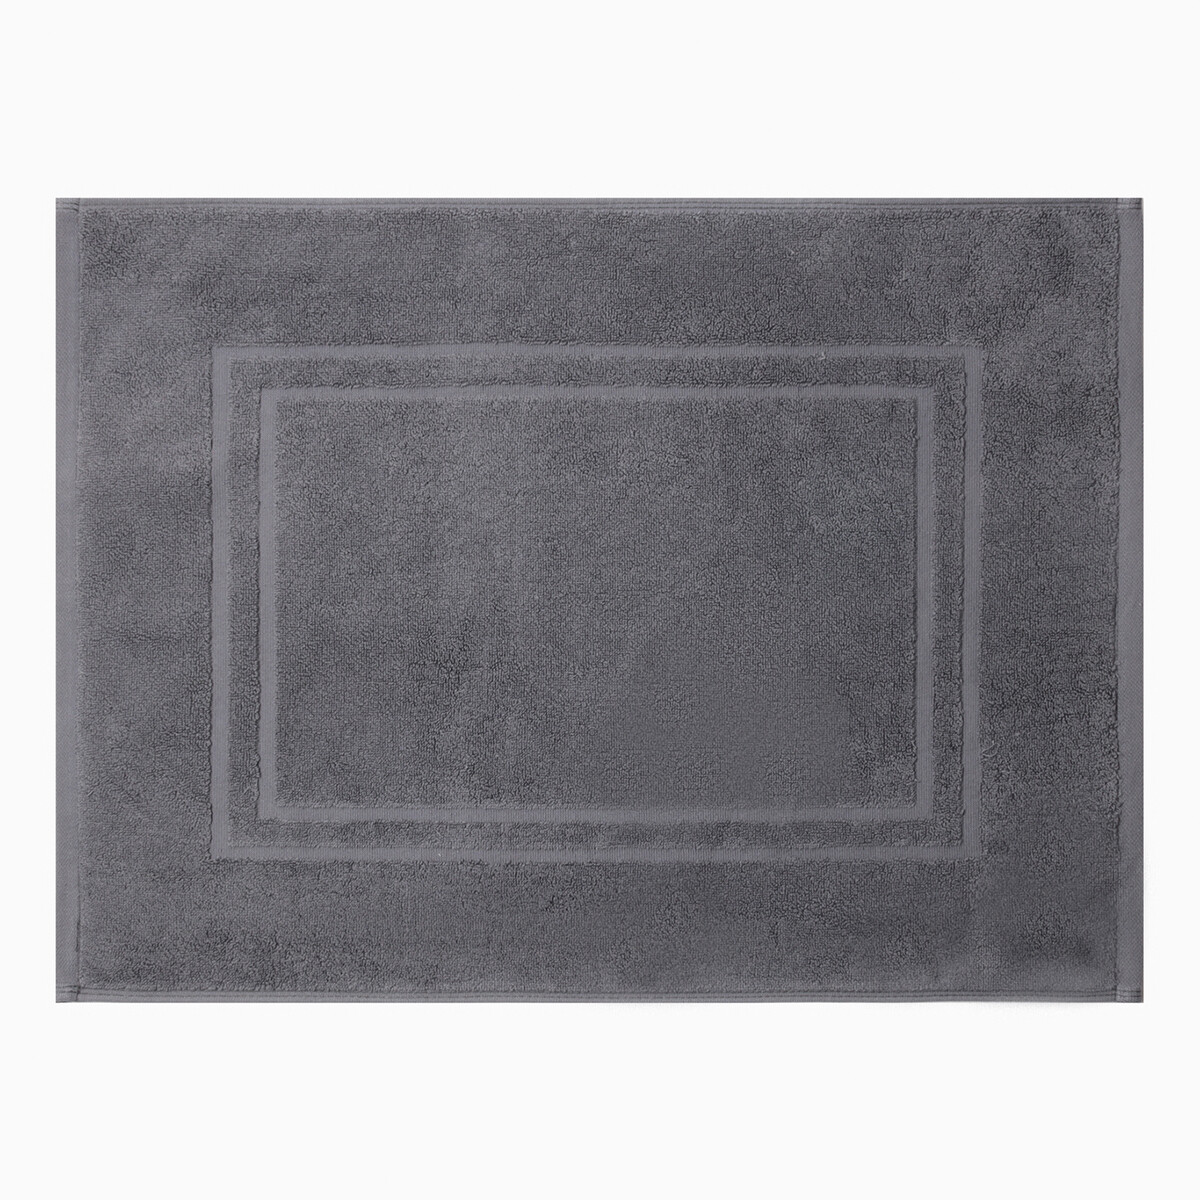 Коврик махровый этель classic, цв. темно-серый, 50х70 см, 100% хлопок, 730 г/м2 Этель 08045150 - фото 1